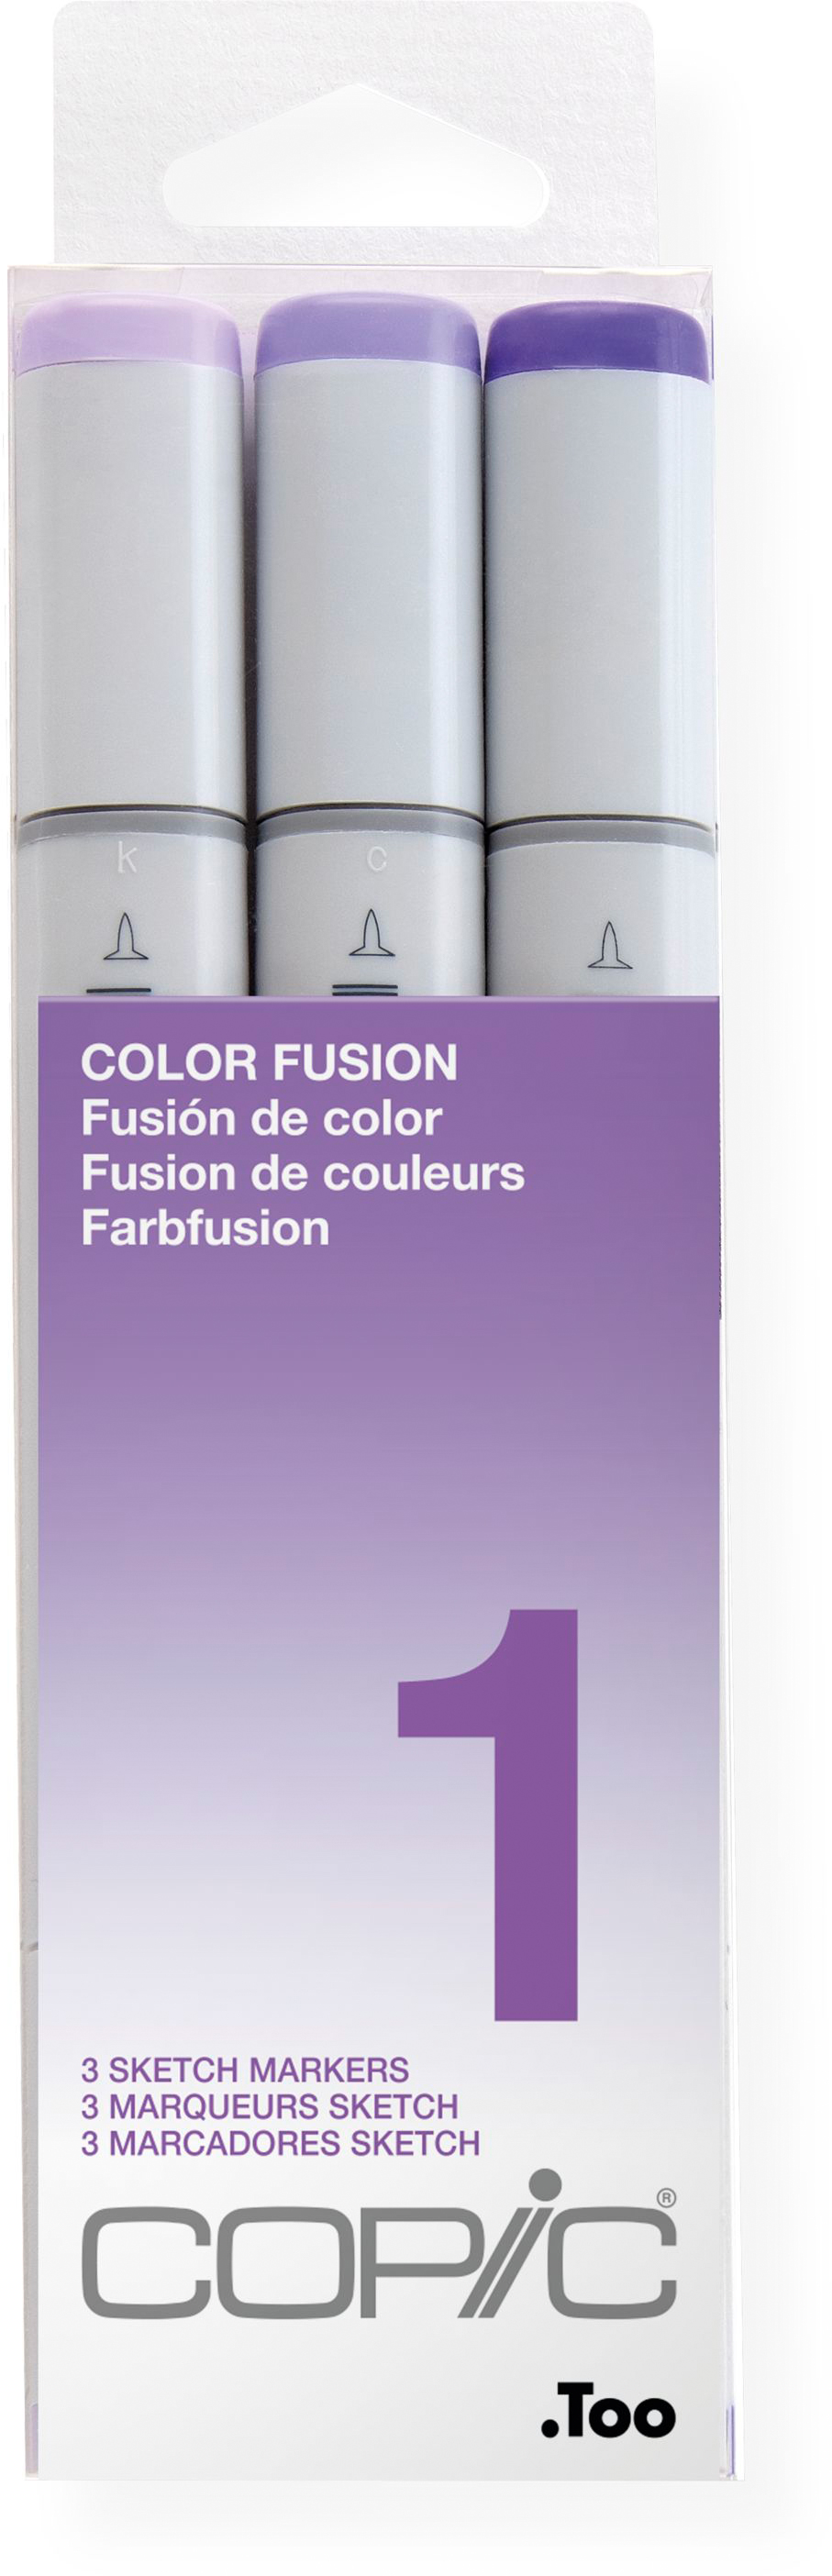 COPIC Marker Sketch 21075651 Set Color Fusion 1, 3 pcs.